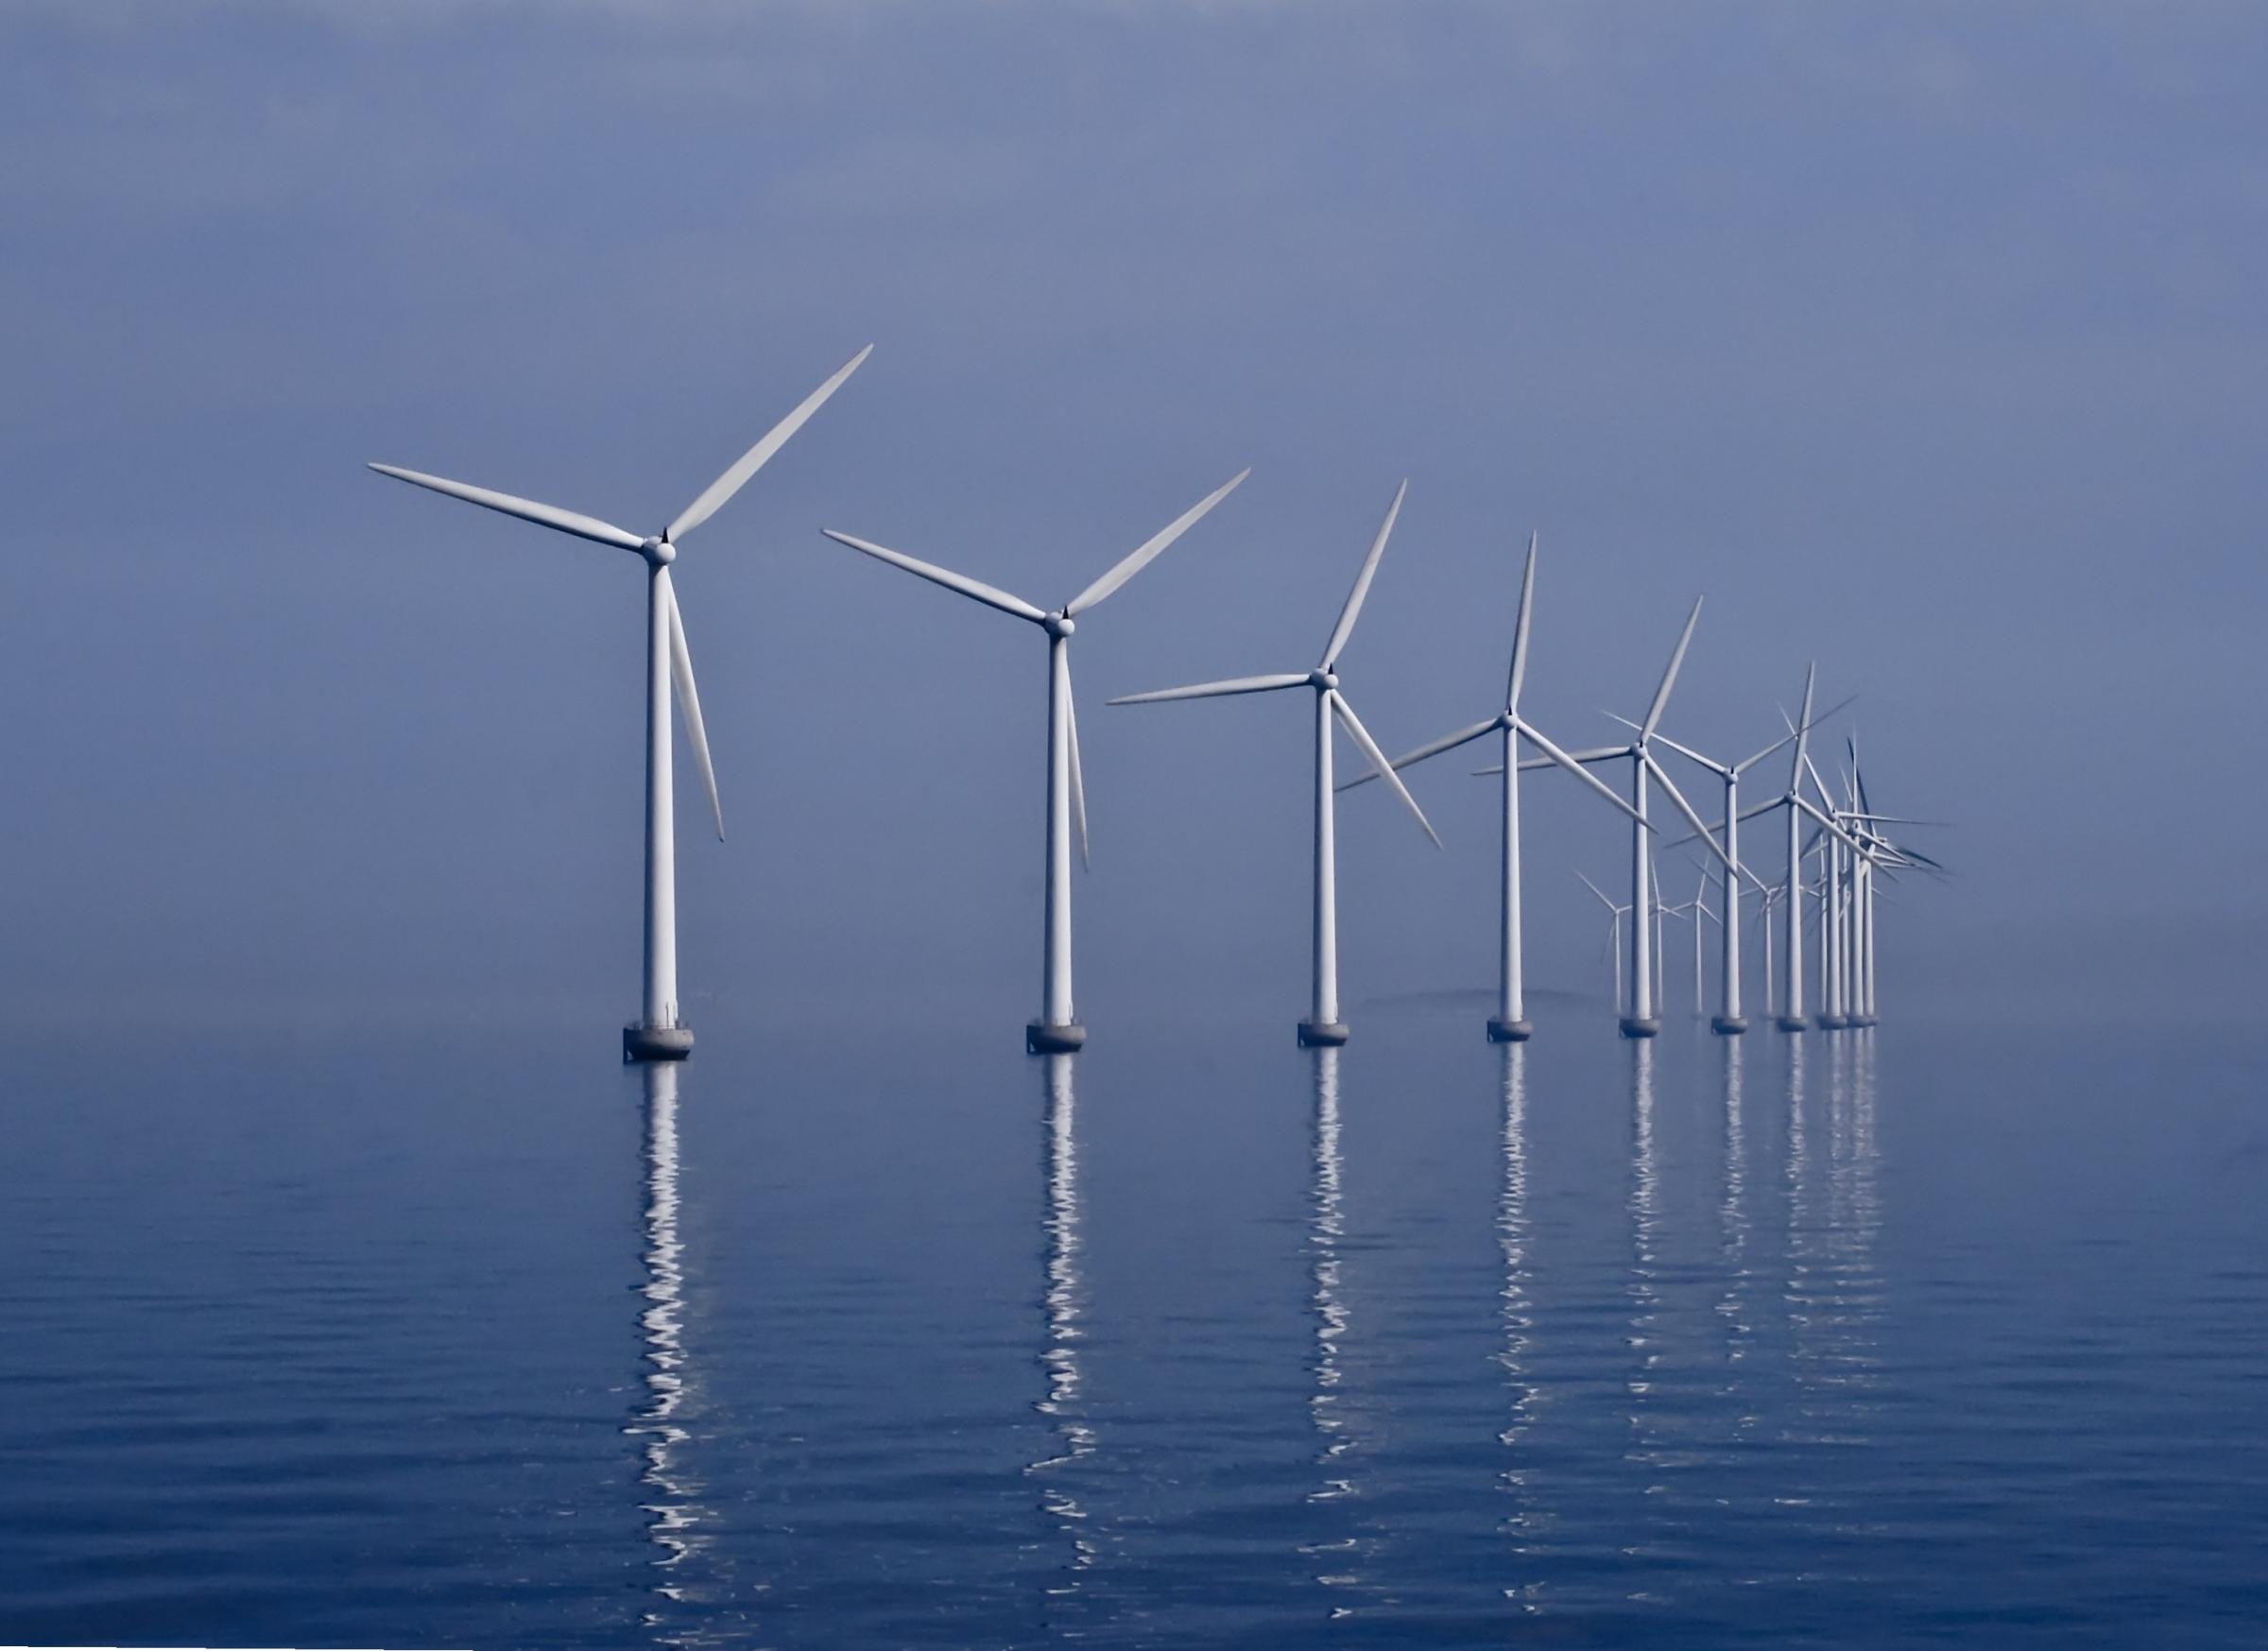 The Middelgrunden is an offshore wind farm outside Copenhagen, Denmark. KIM HANSEN / FLICKR